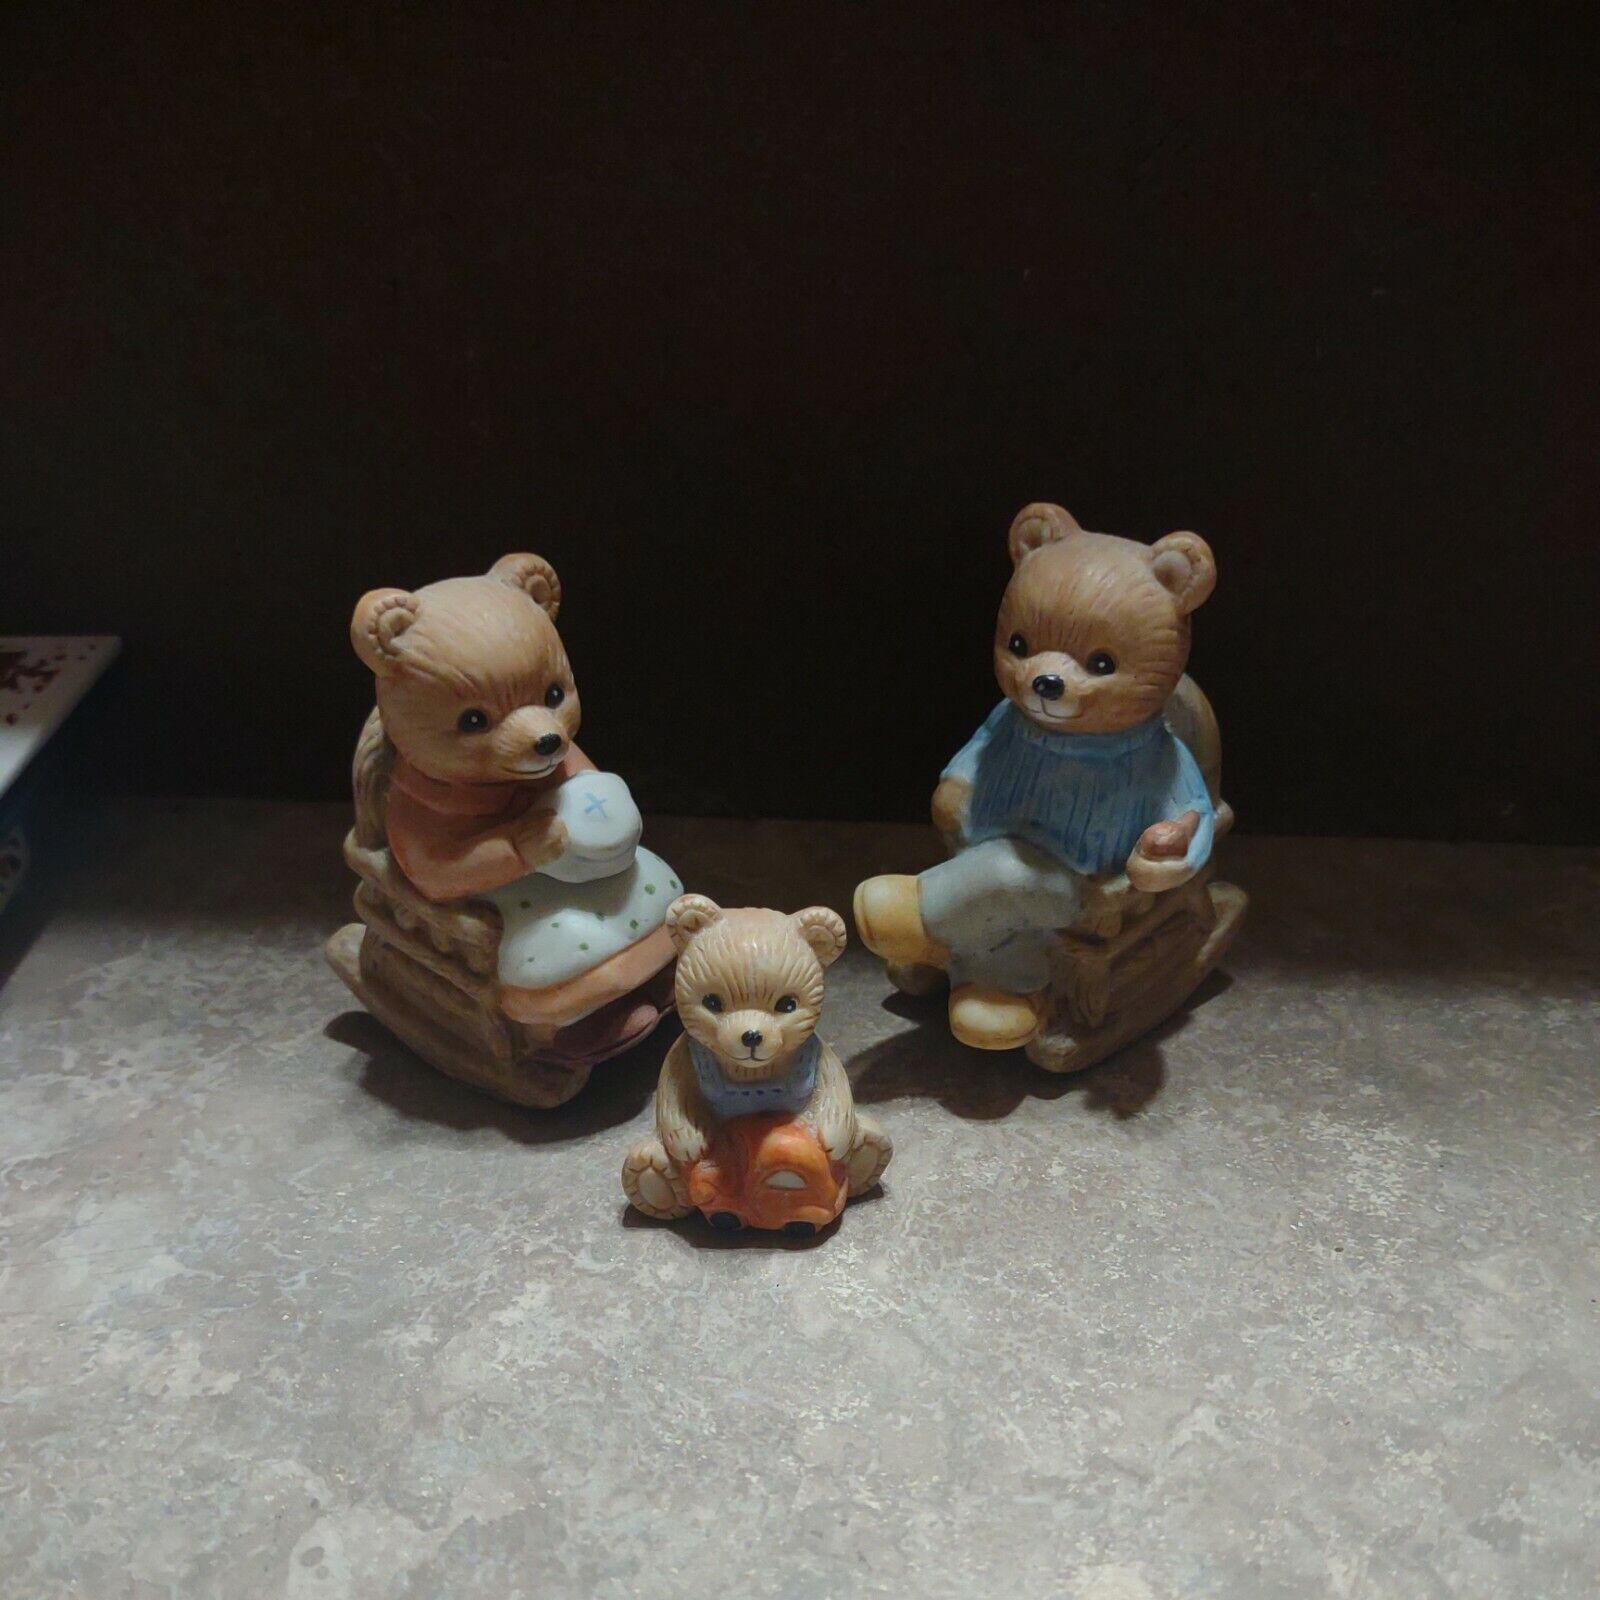 Vintage Homco Home Interior Set of 3 Bear  Figurines #1470 Porcelain new no box 